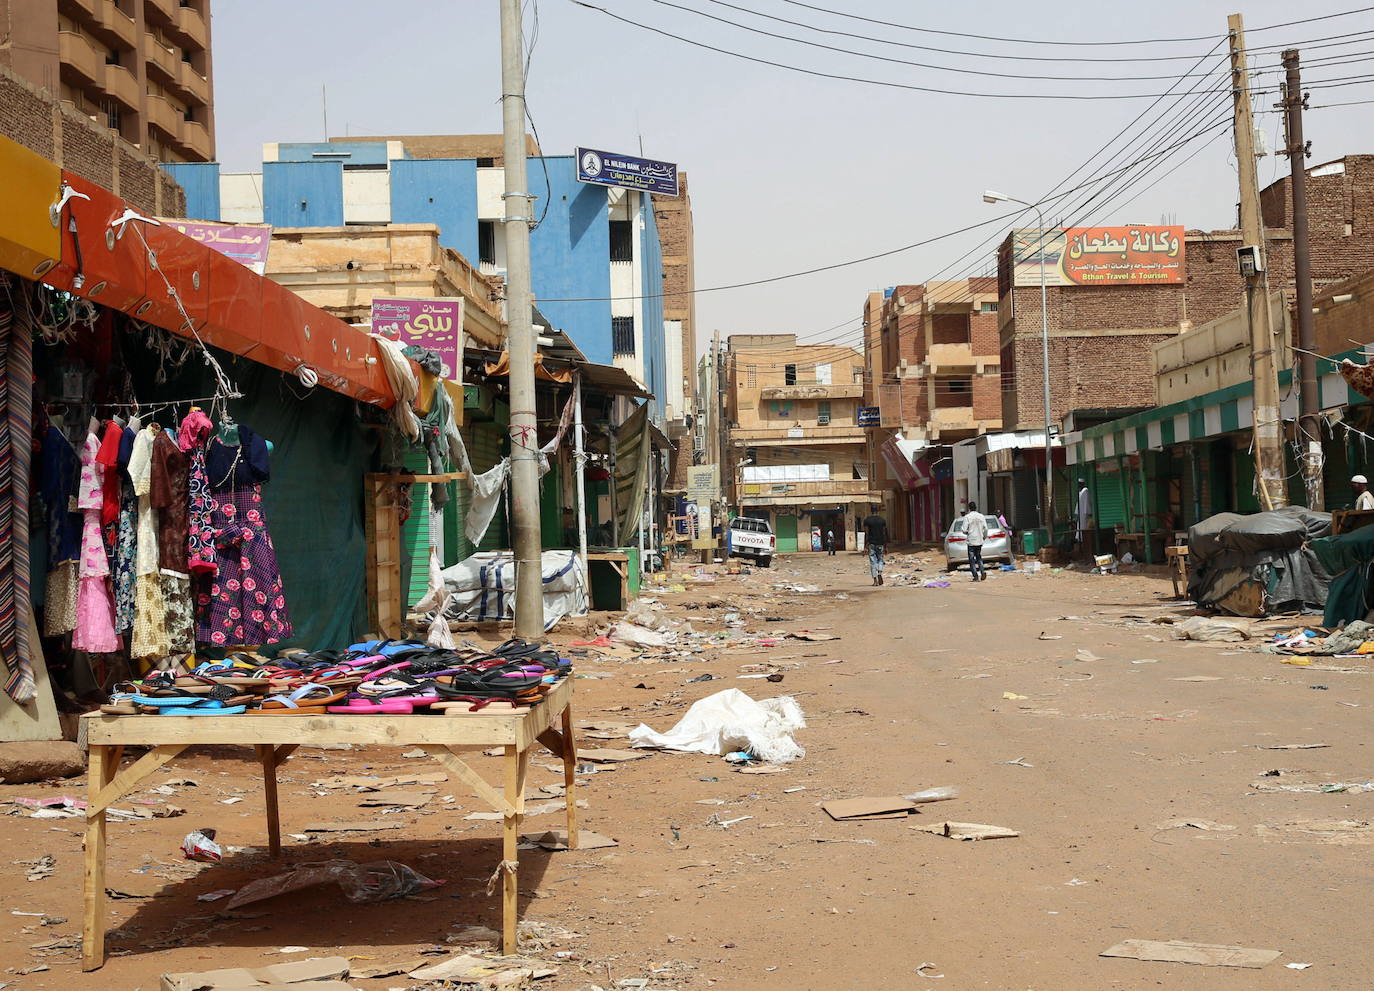 Sudán: ante la situación de inestabilidad actual en Sudán, se recomienda posponer todo desplazamiento no esencial al país. Se ha decretado el estado de emergencia en todo el territorio nacional. Además continúan las protestas y manifestaciones que se vienen registrando desde diciembre de 2018 en Jartum y otras ciudades del país, que han ocasionado víctimas mortales.